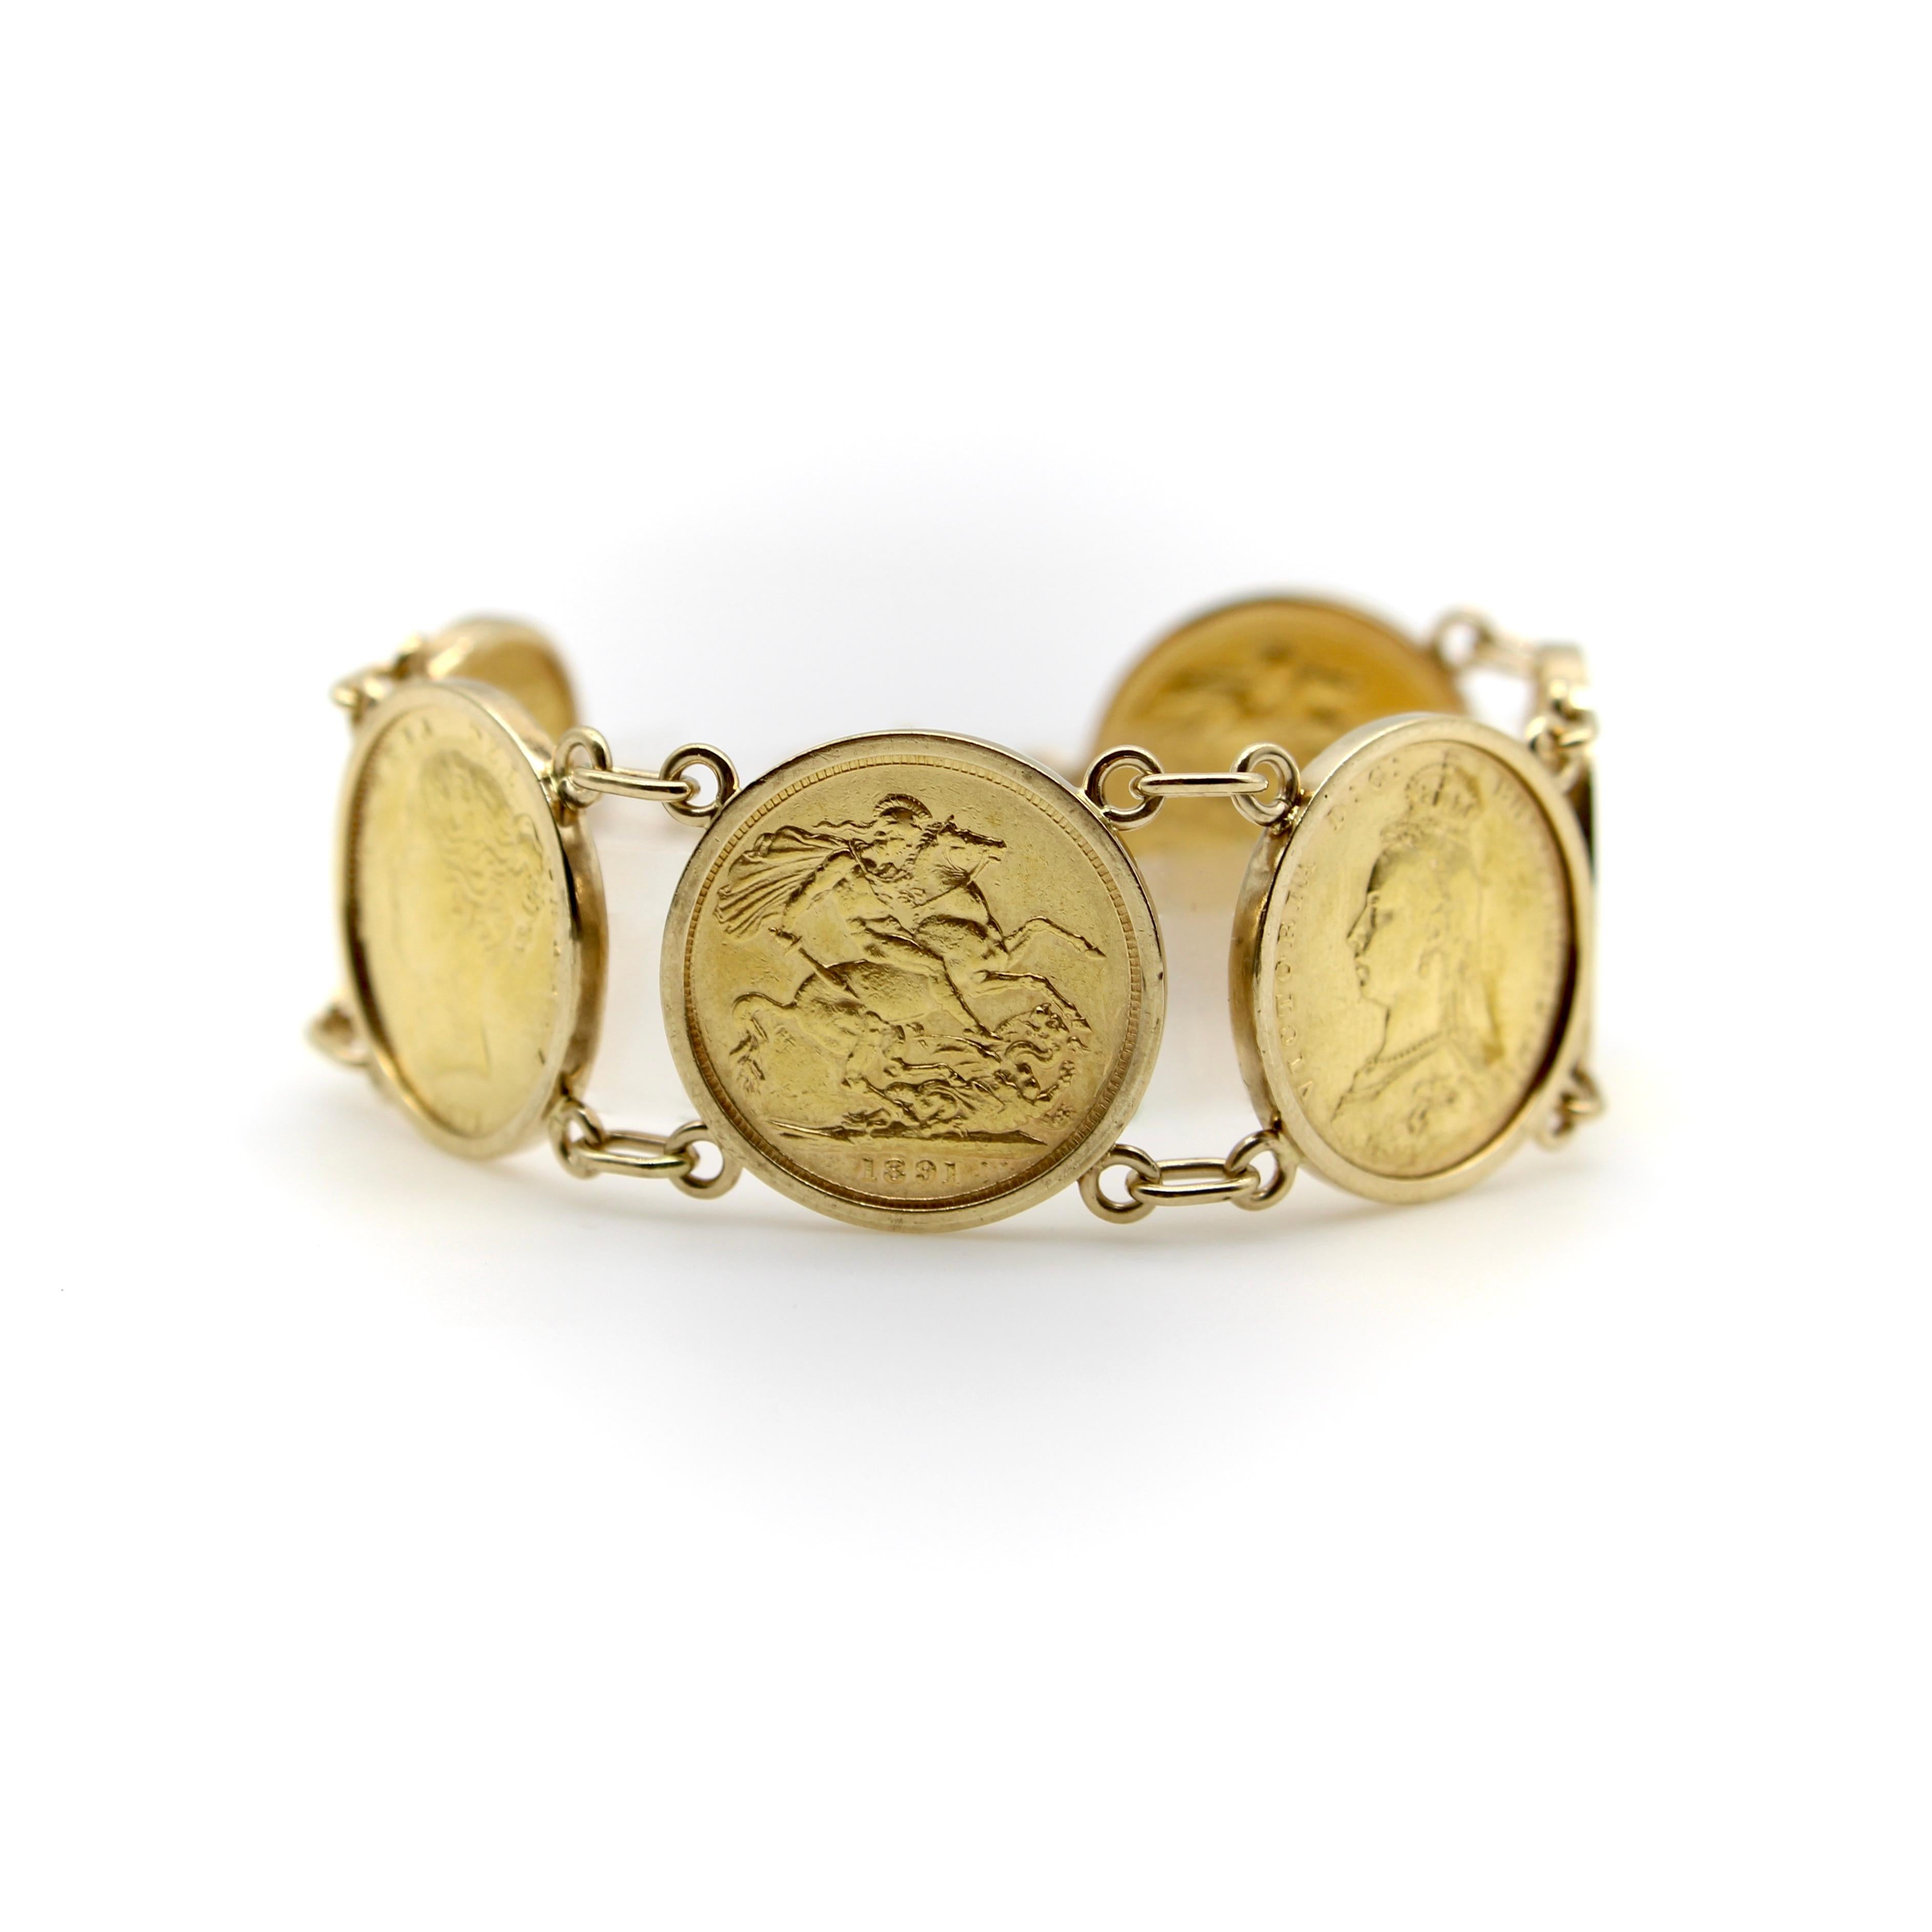 Ce bracelet de pièces en or 22k présente six souverains britanniques dans des entourages en or 10k, reliés par des doubles boucles et un fermoir à anneau à ressort. Les pièces sont datées de 1877 à 1900 et représentent chacune le portrait de la